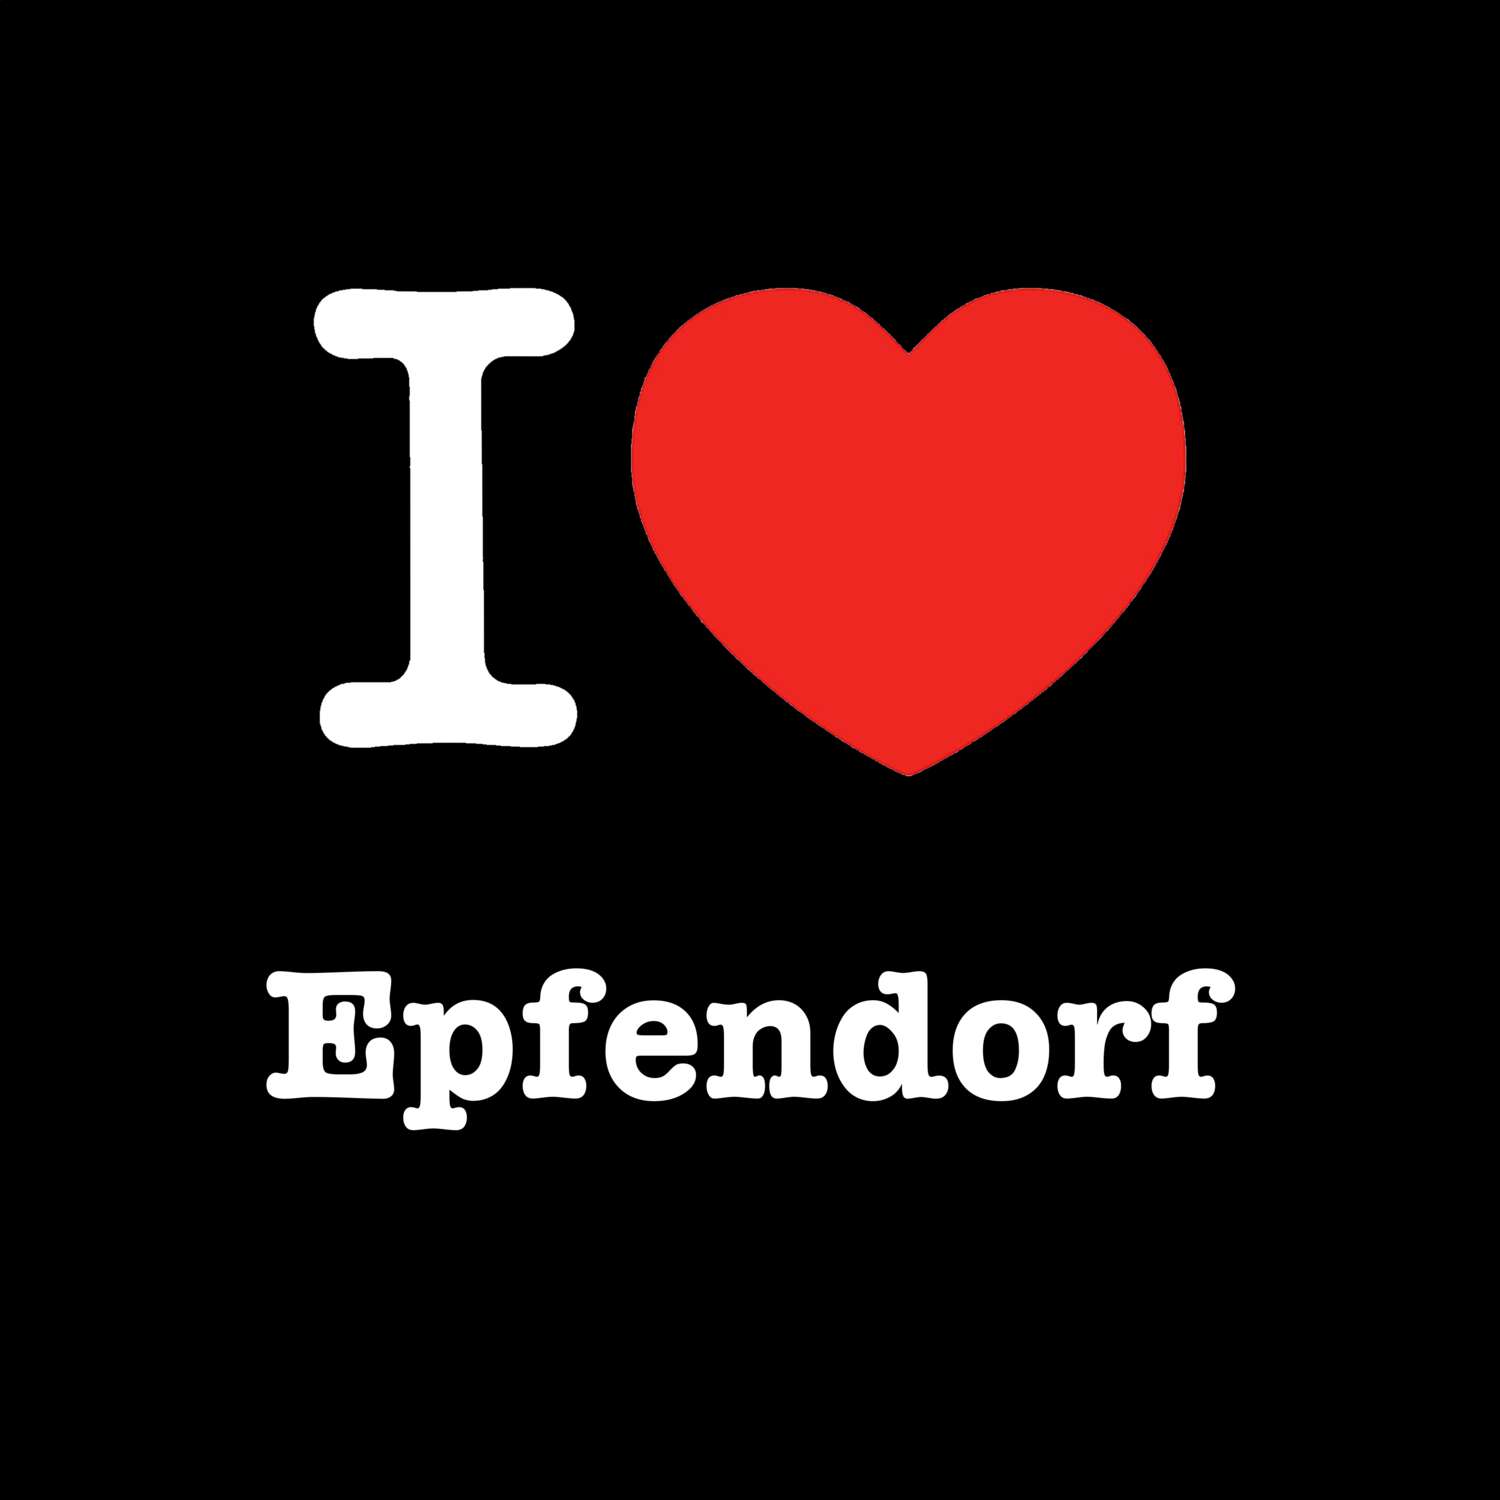 Epfendorf T-Shirt »I love«